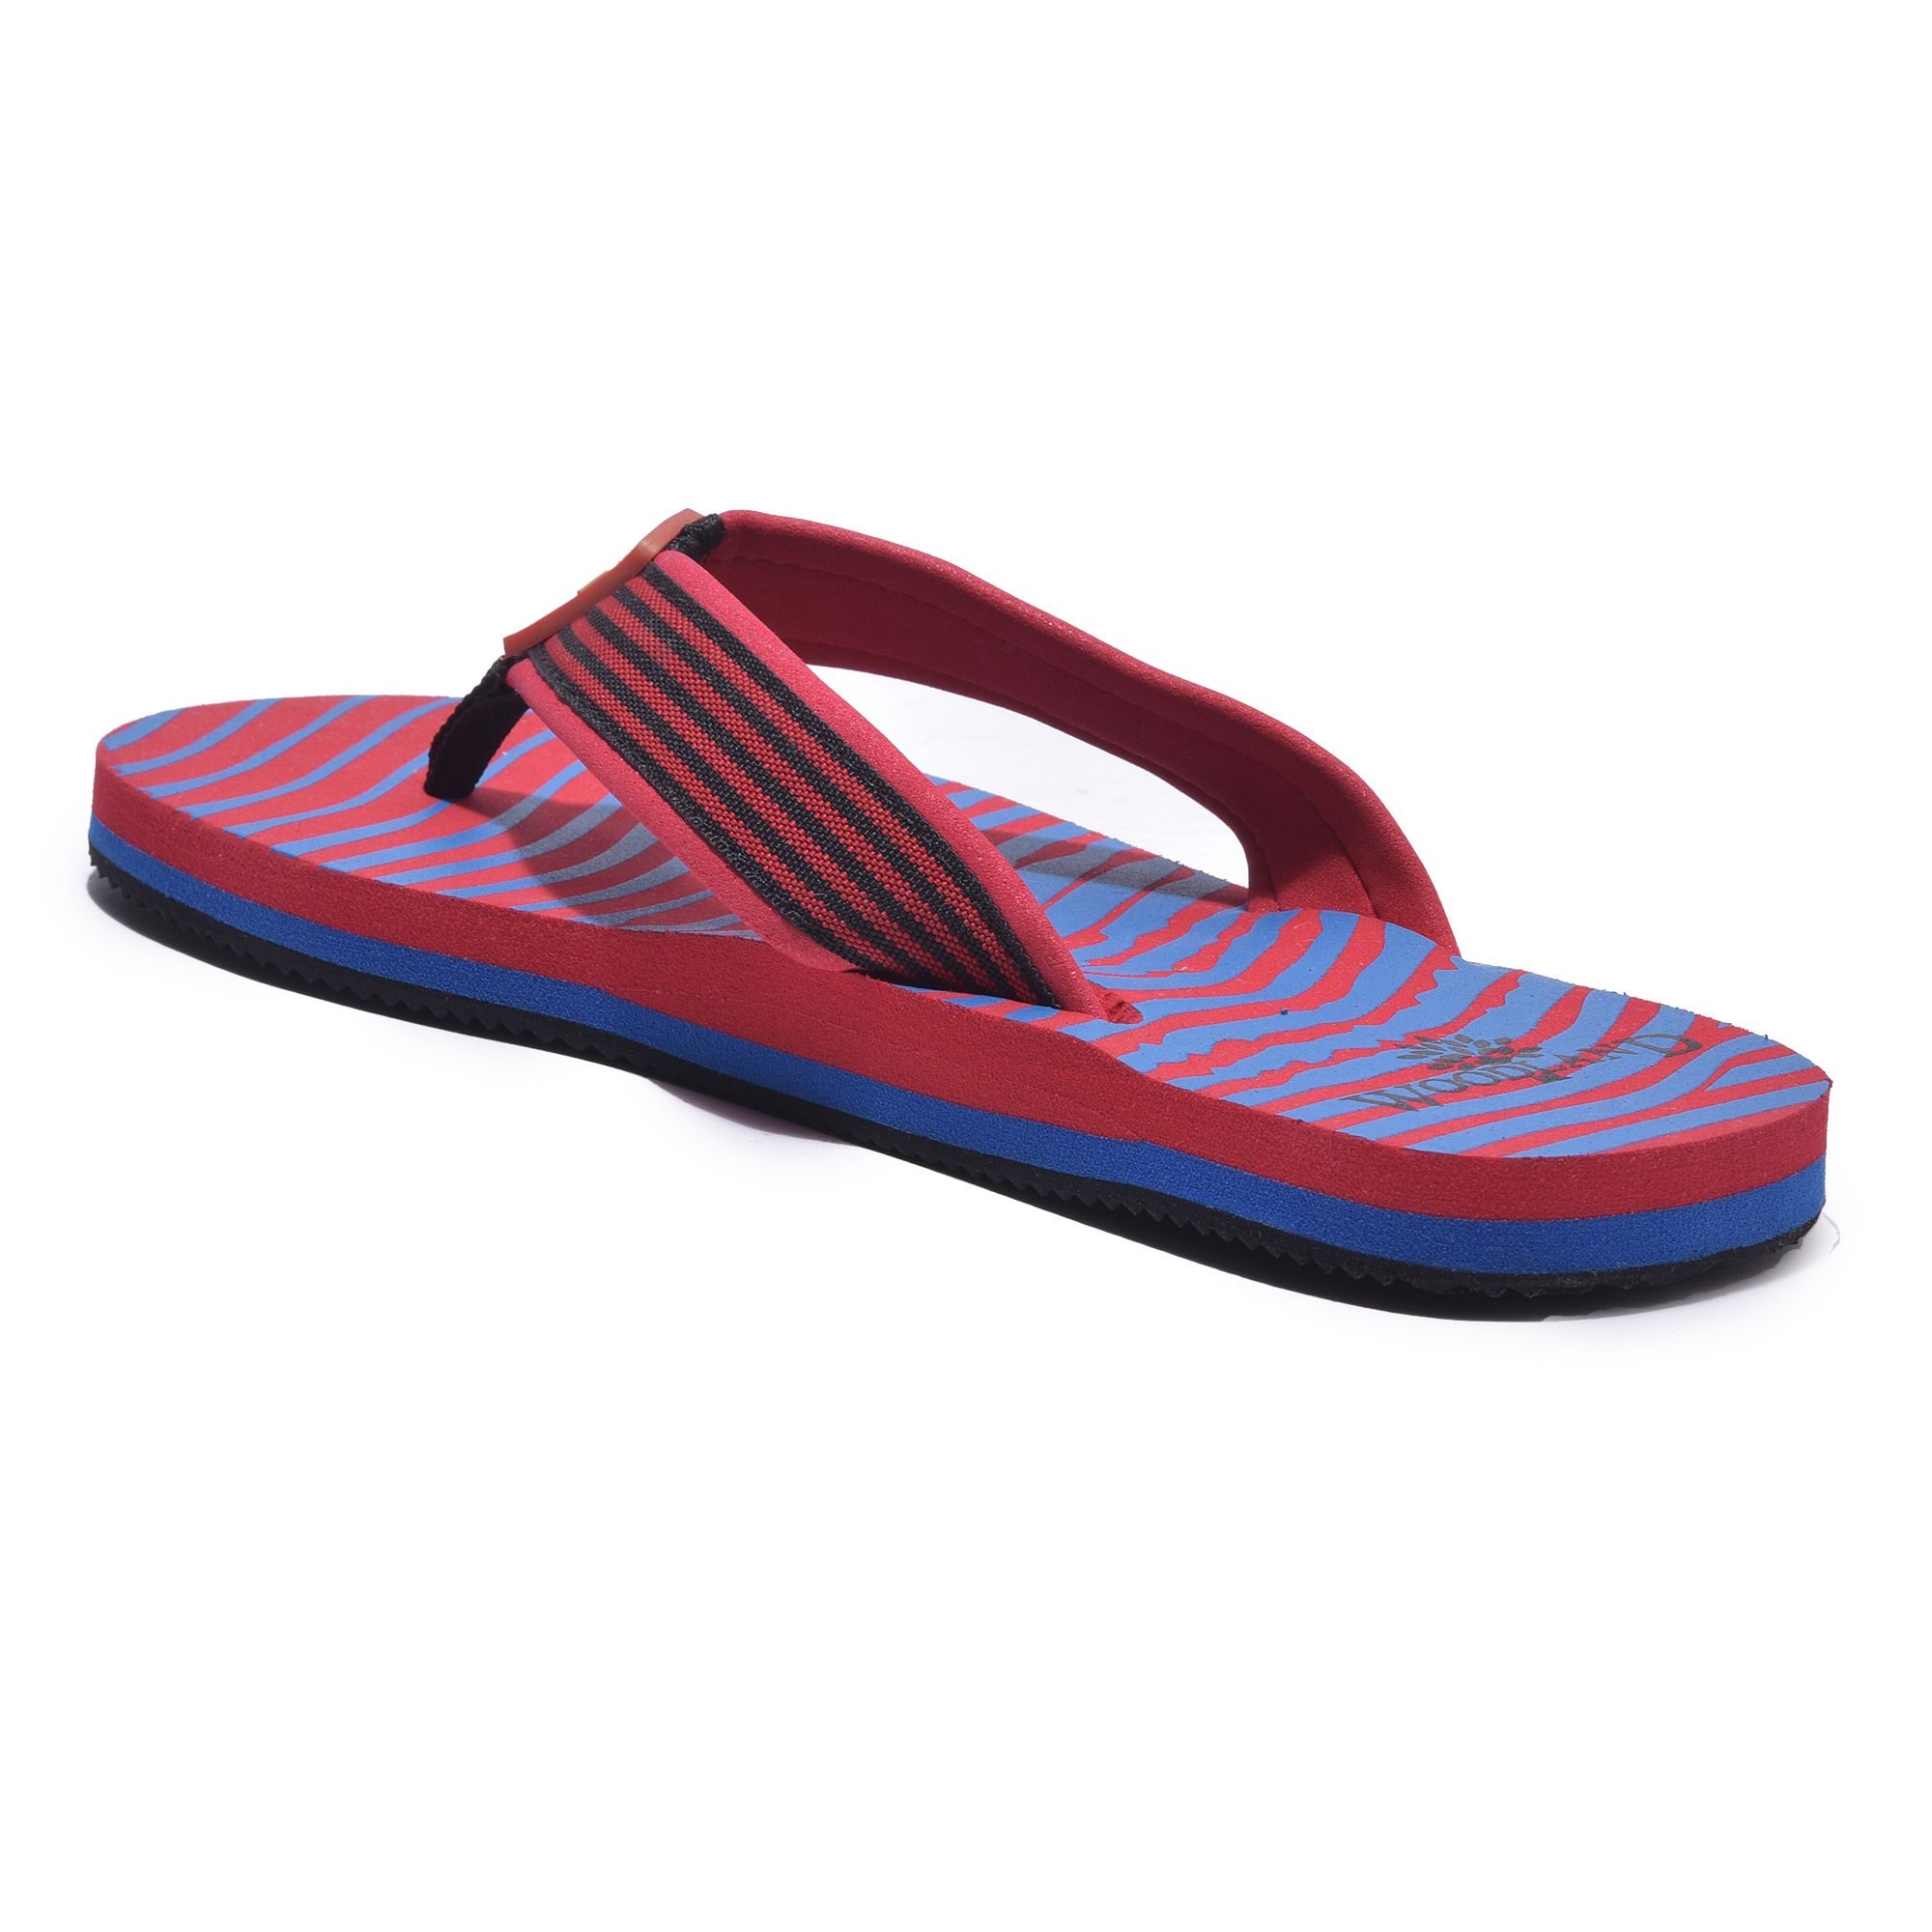 Red/blue slipper for men